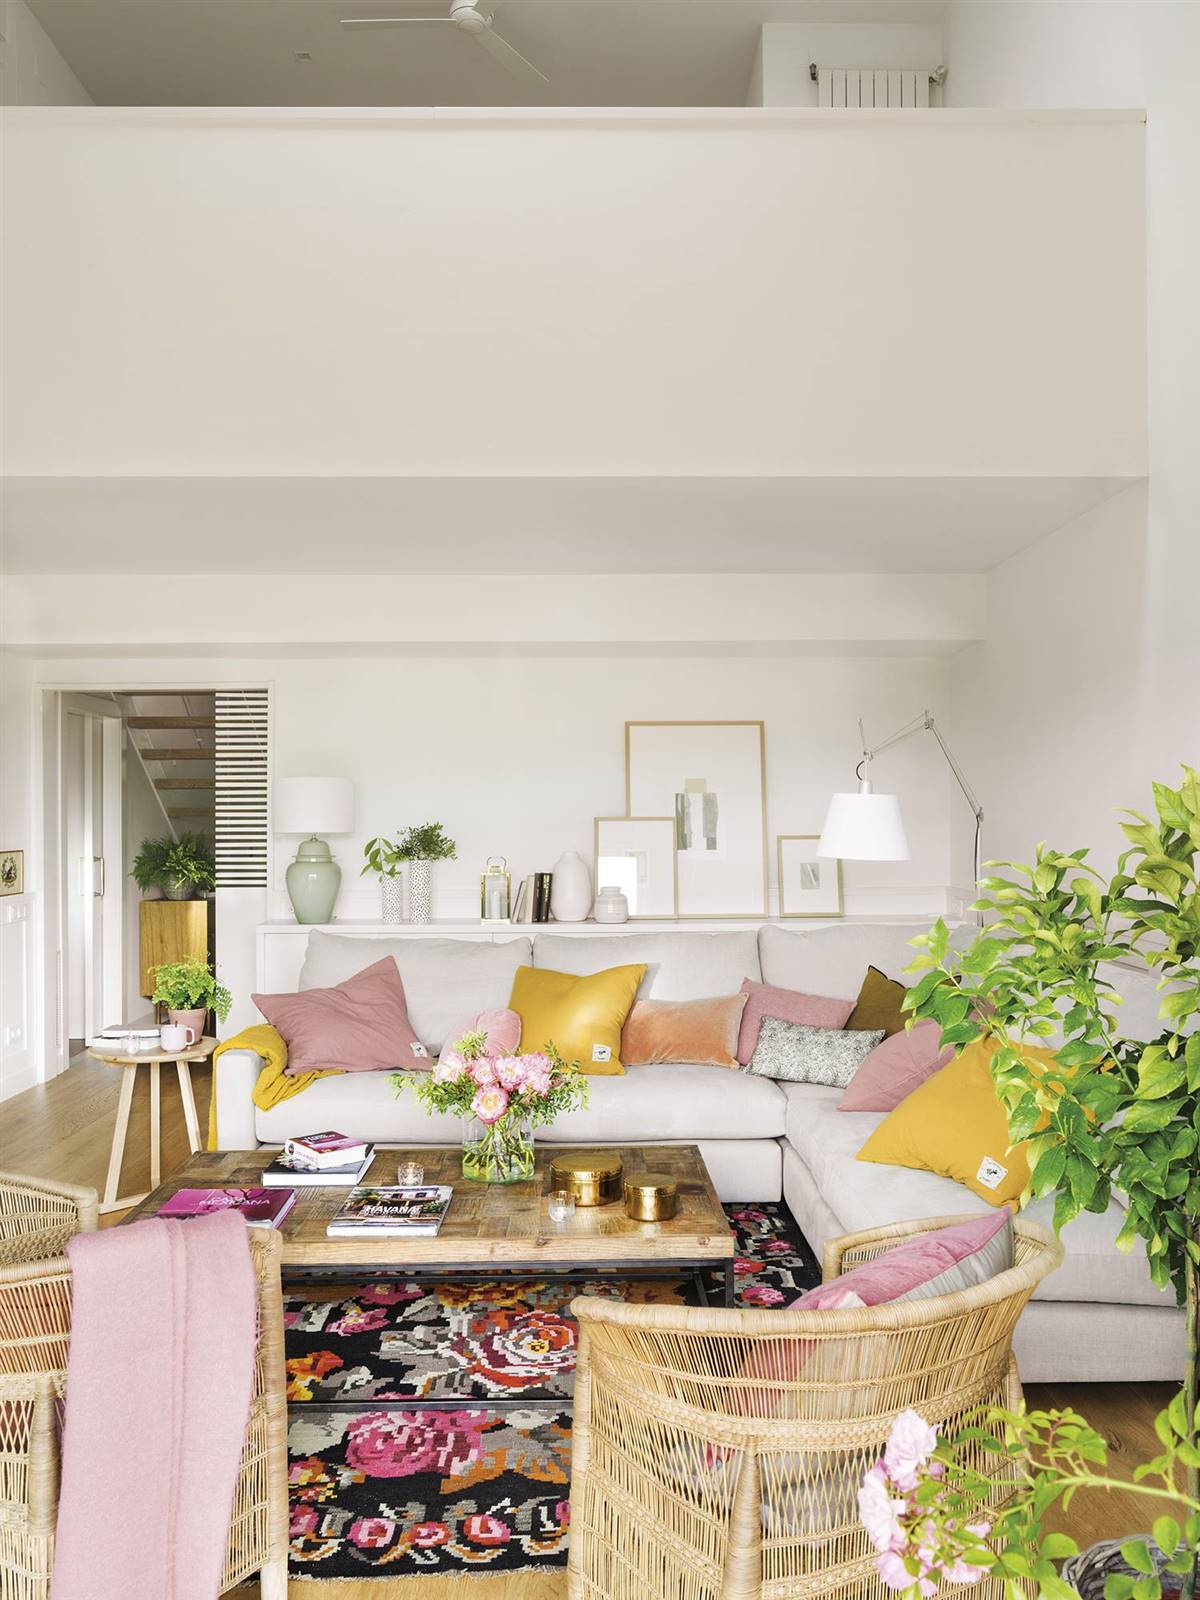 Salón pequeño con paredes blancas, sofá gris en ''L'', mesa auxiliar de madera, alfombra con motivos florales y textiles en rosa y mostaza